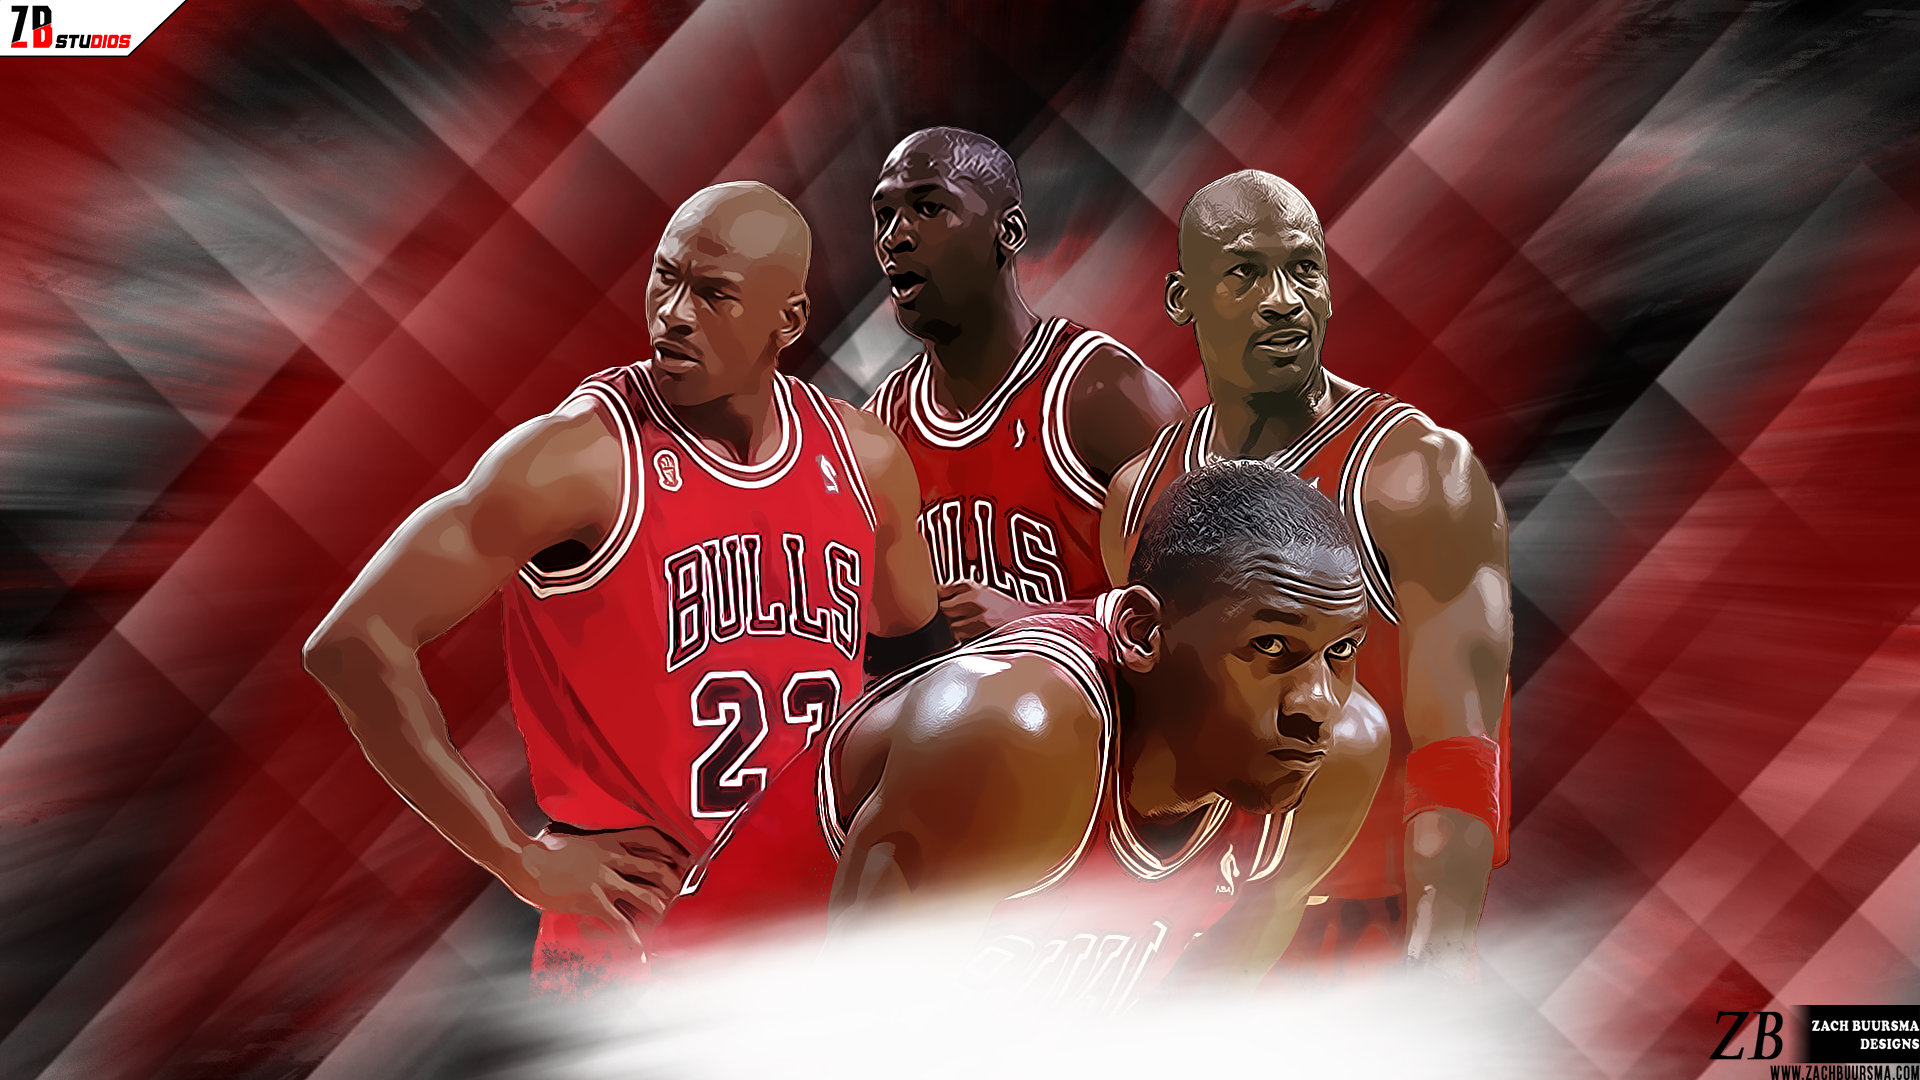 fond d'écran michael jordan,joueur de basketball,rouge,basketball,mouvements de basket ball,équipe